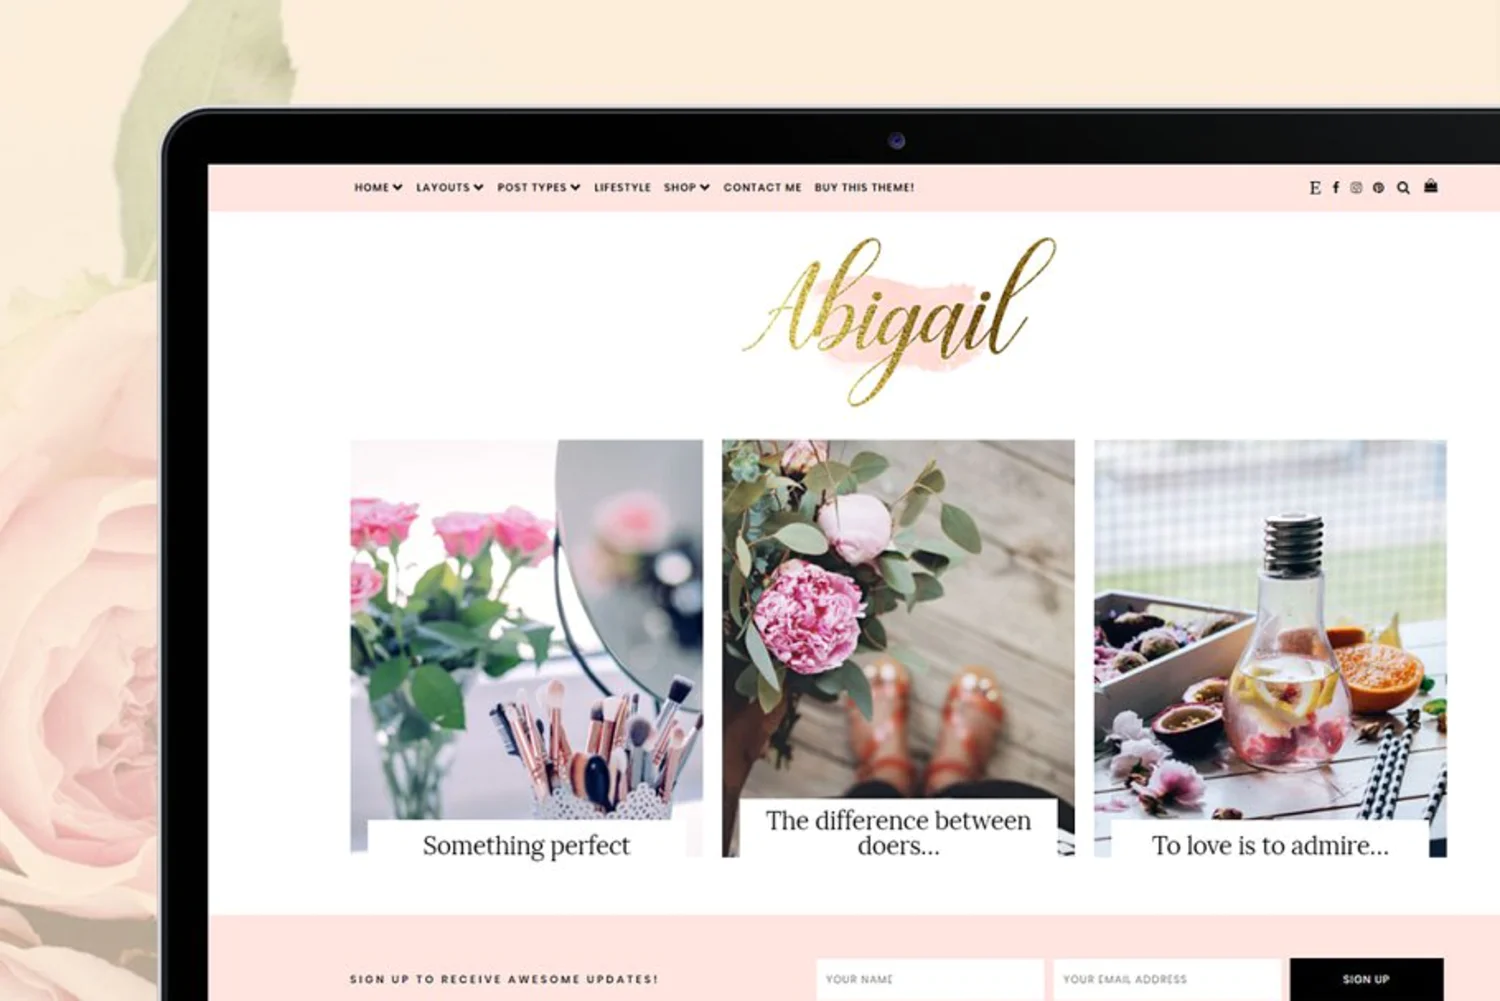 5991 博客皮肤电脑网站主题模板 Beauty WordPress Theme – Abigail